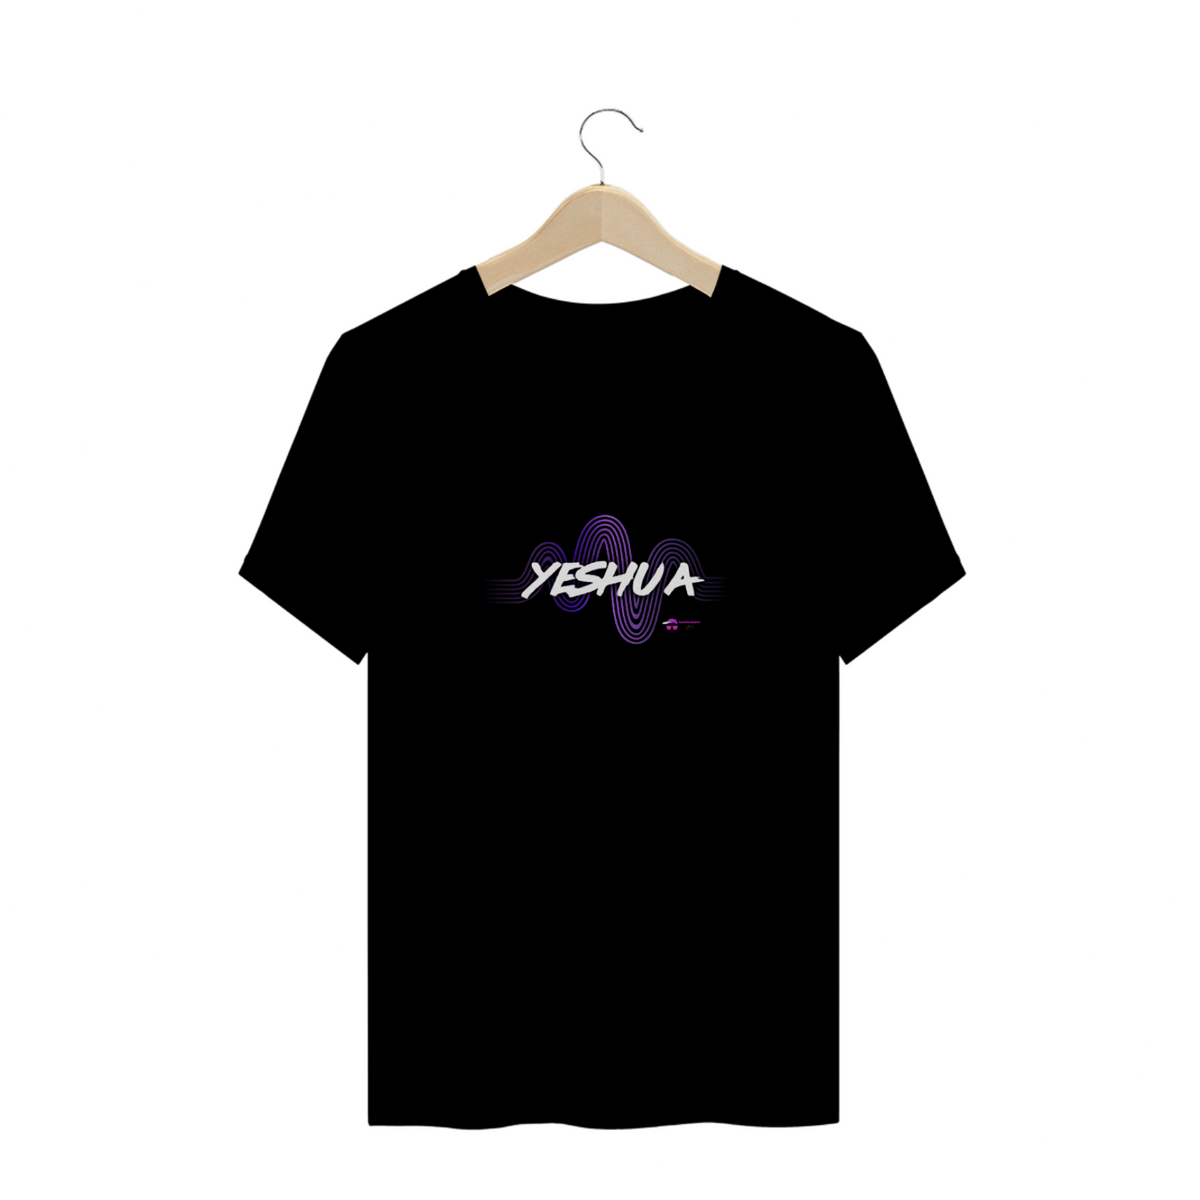 Nome do produto: Camisa T-shirt Quality - Yeshua Preta